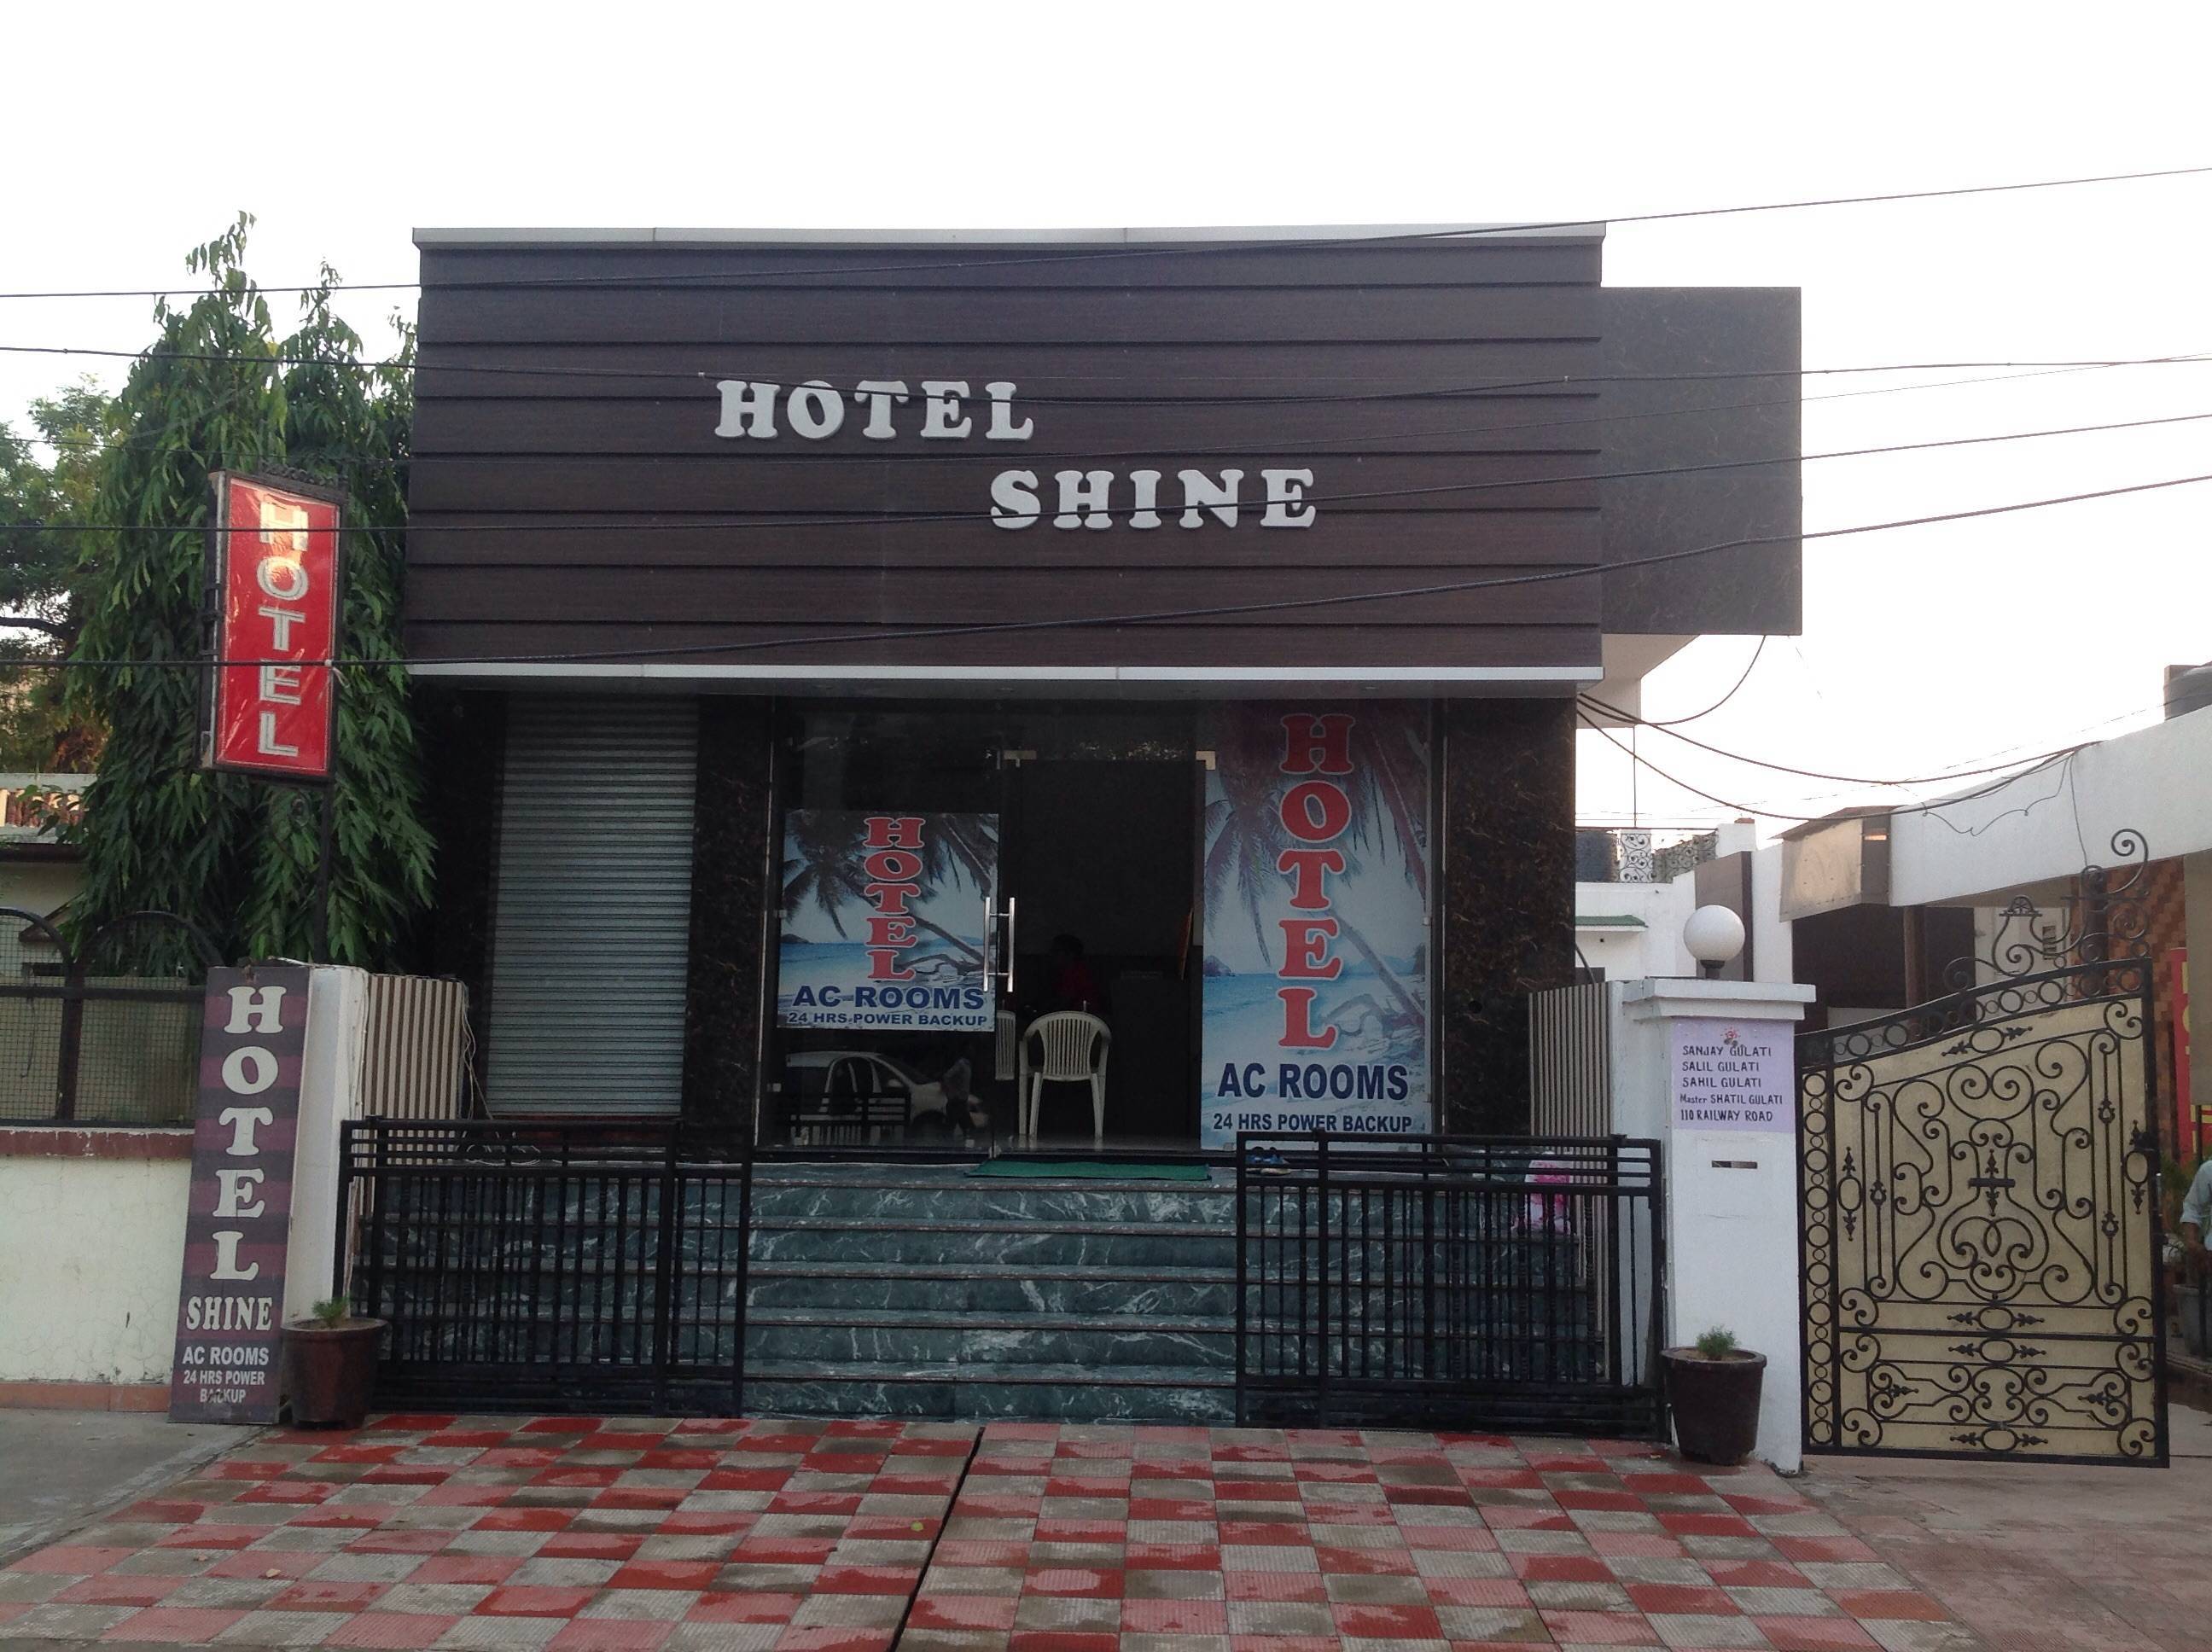 Hotel Shine|Resort|Accomodation